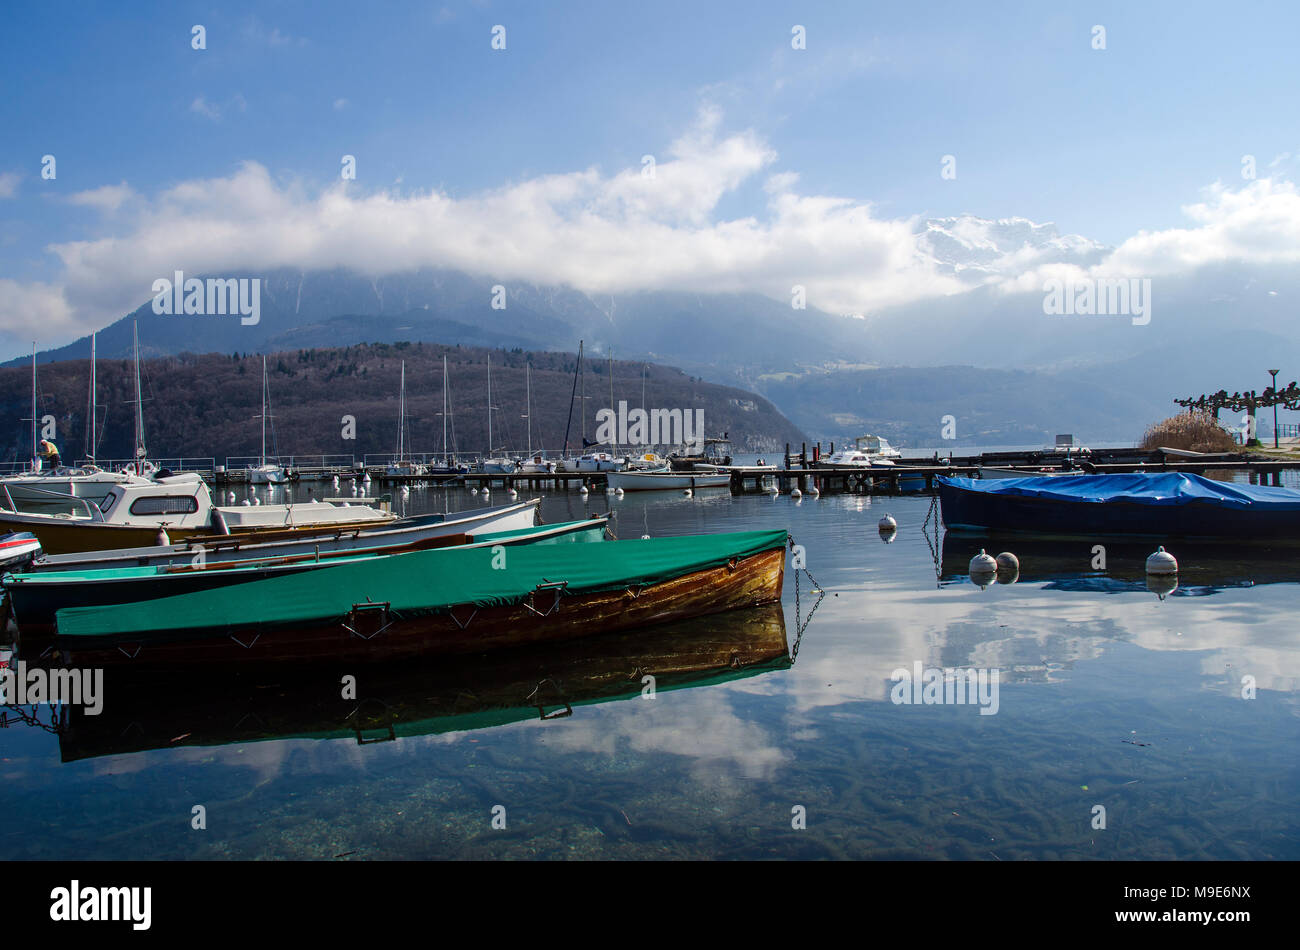 Port de plaisance de saint jorioz sur le lac d'Annecy, paysage d'hiver, Savoie, France Banque D'Images